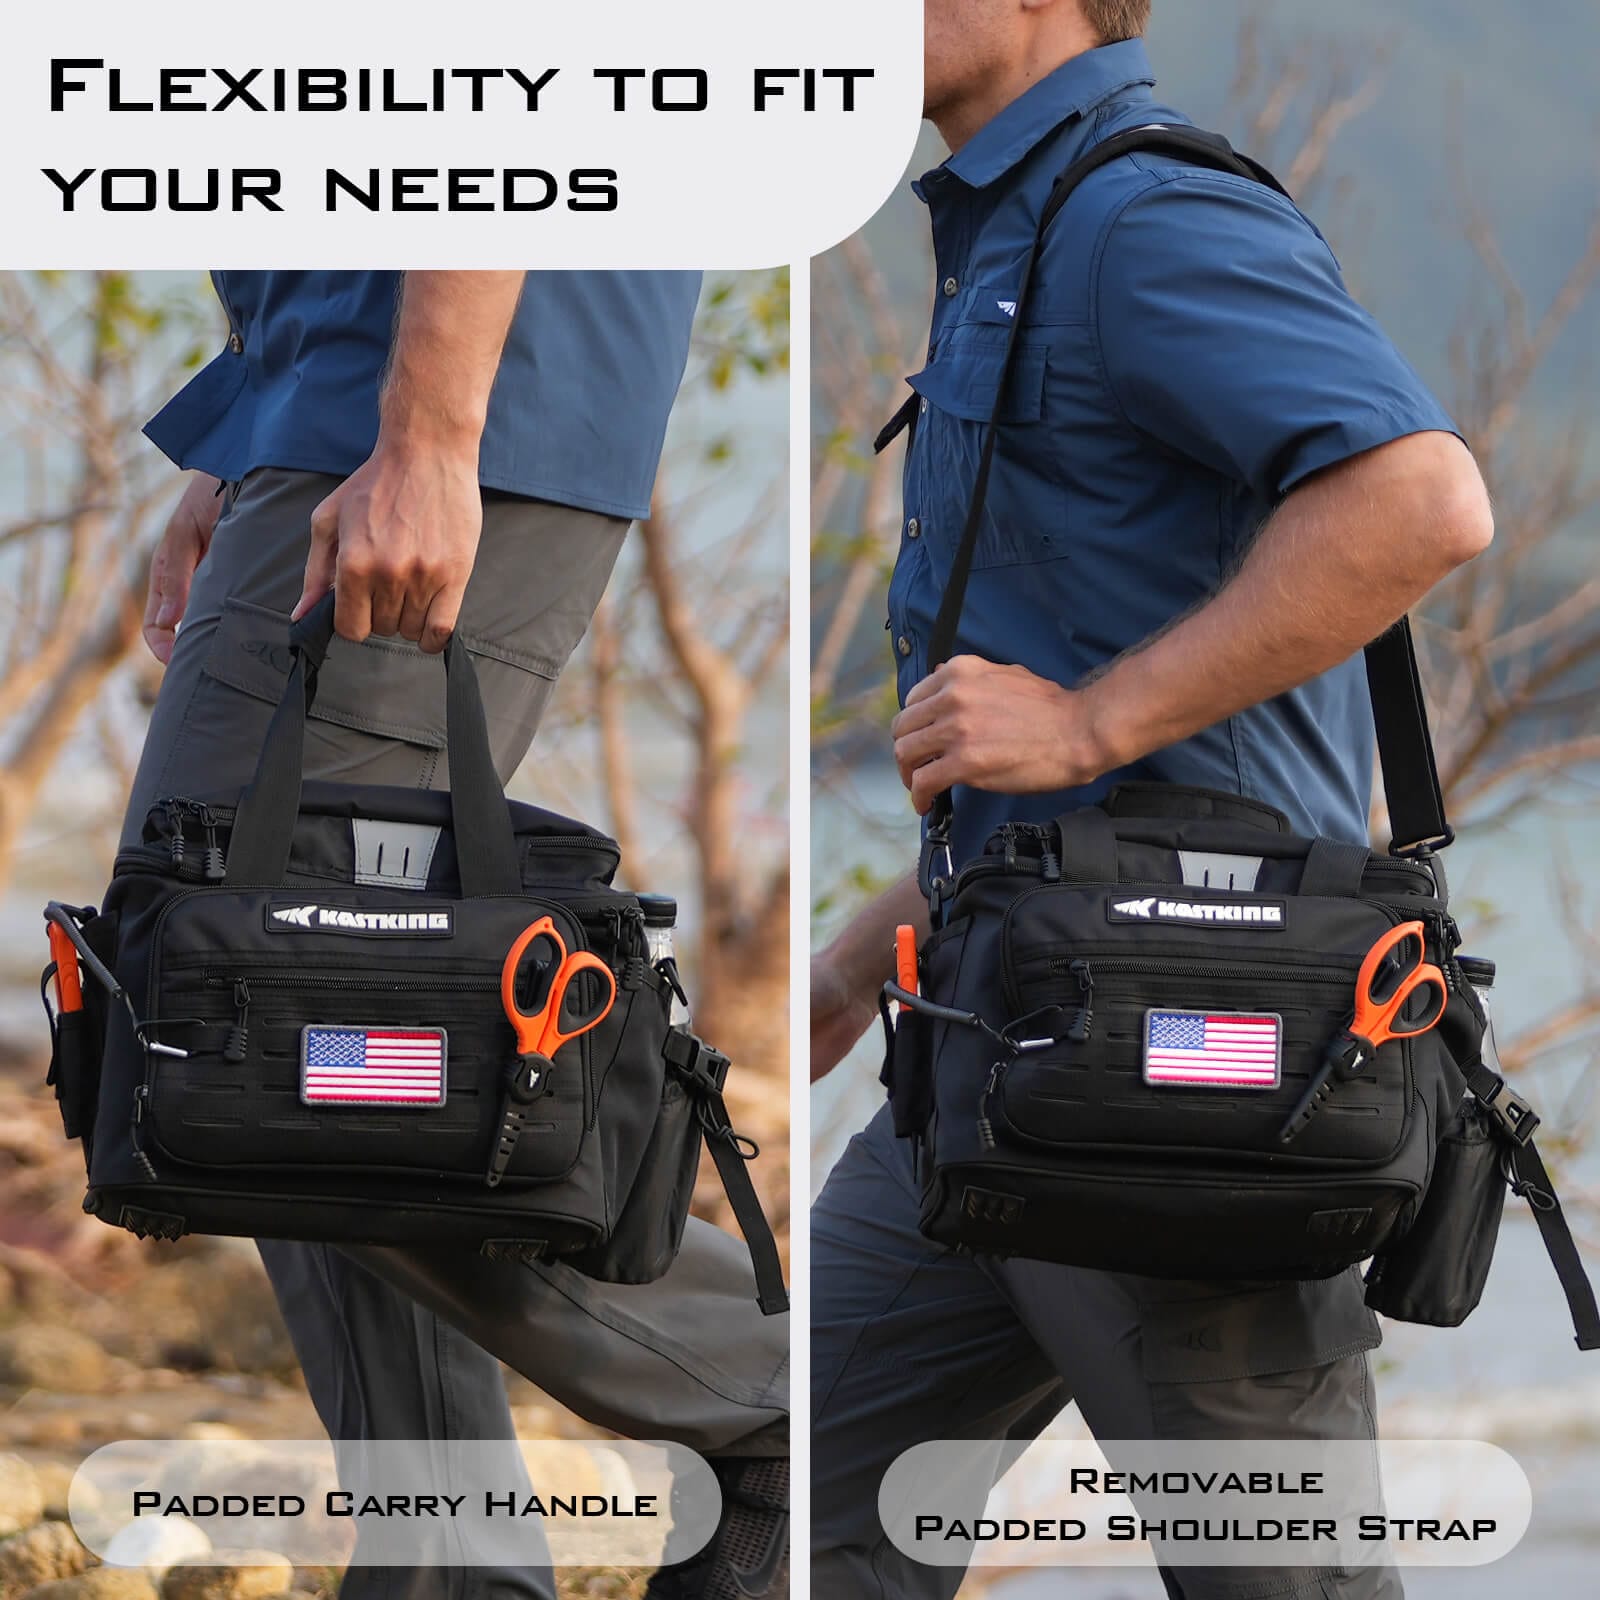 Kastking Karryall Medium Fishing Tackle Daily Backpack - Army Green / Bag  With 4pcs Tackle Box